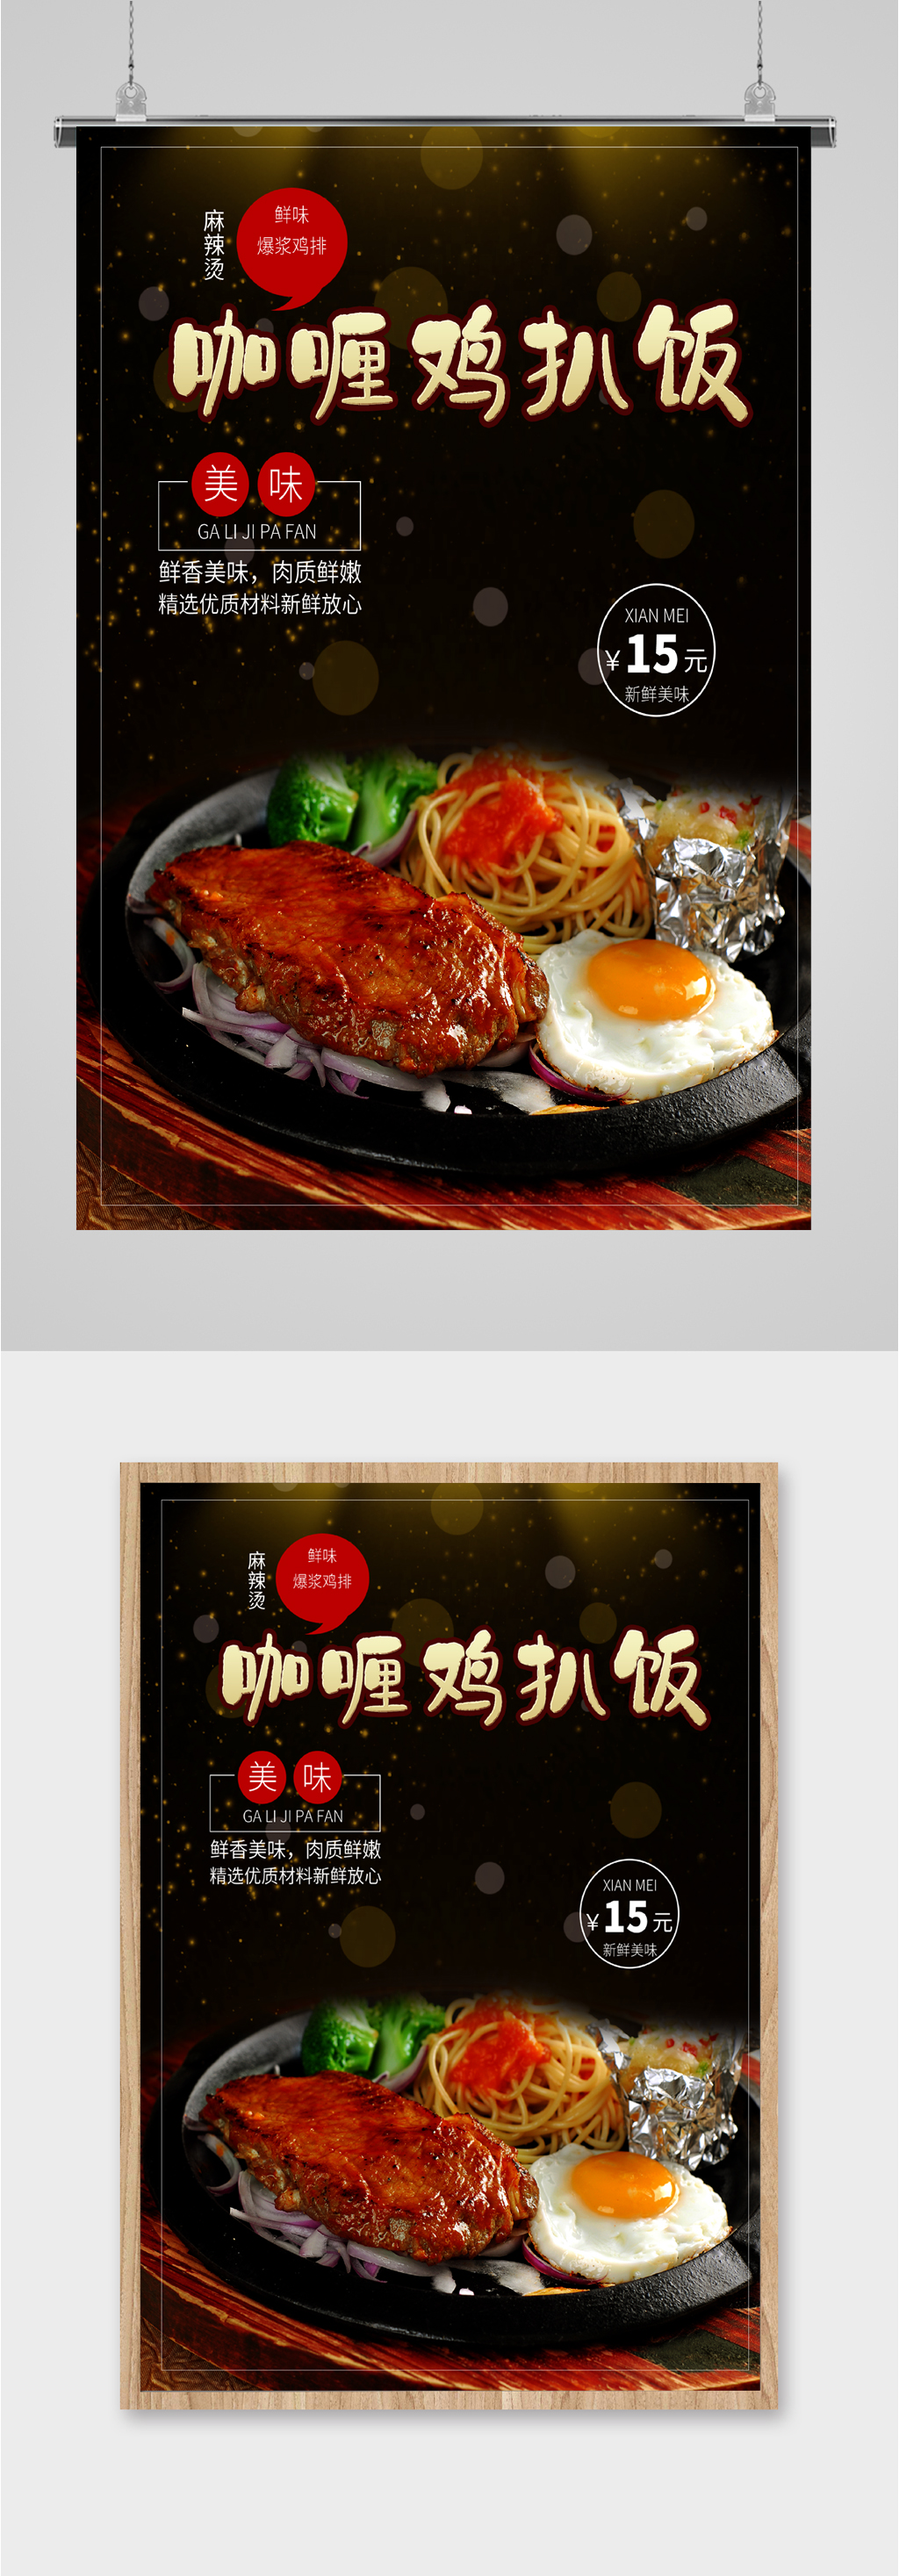 咖喱鸡排饭宣传海报